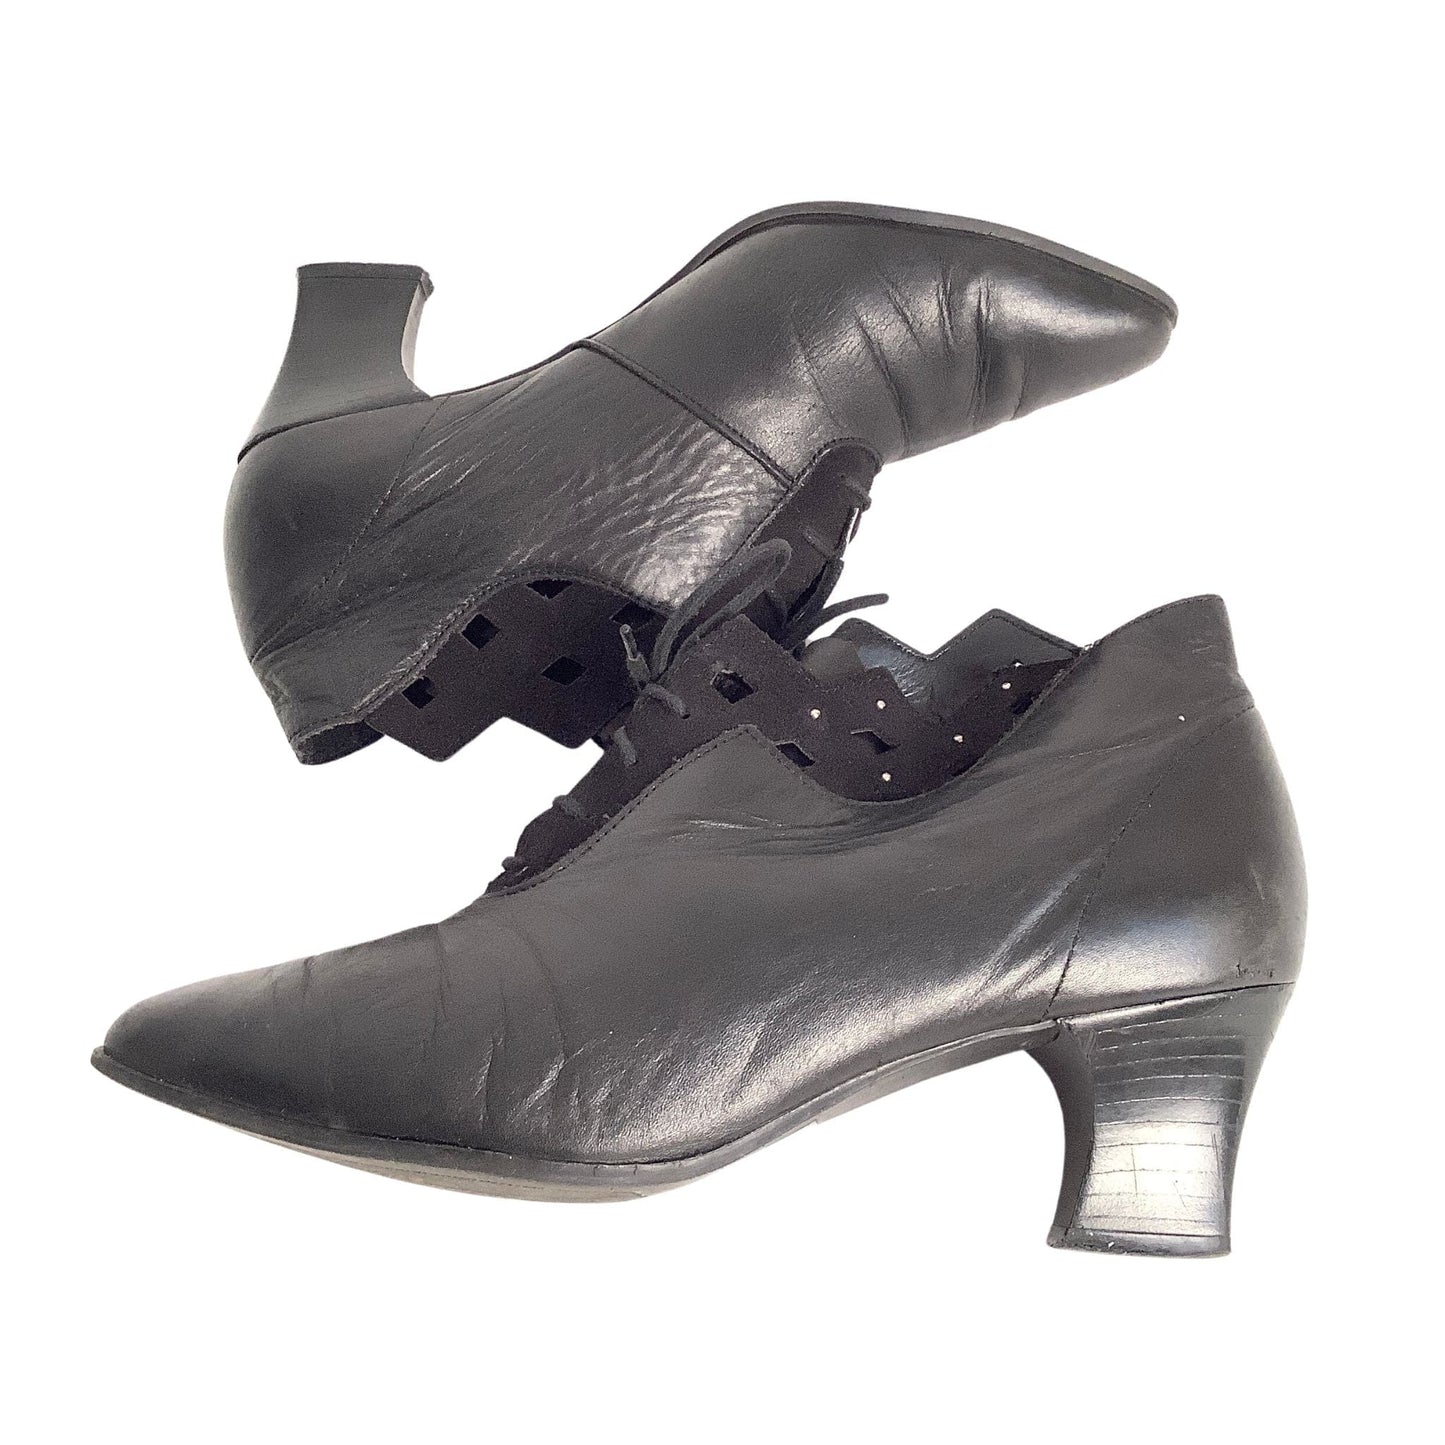 Vintage Granny Ankle Boots 7 / Black / Vintage 1980s